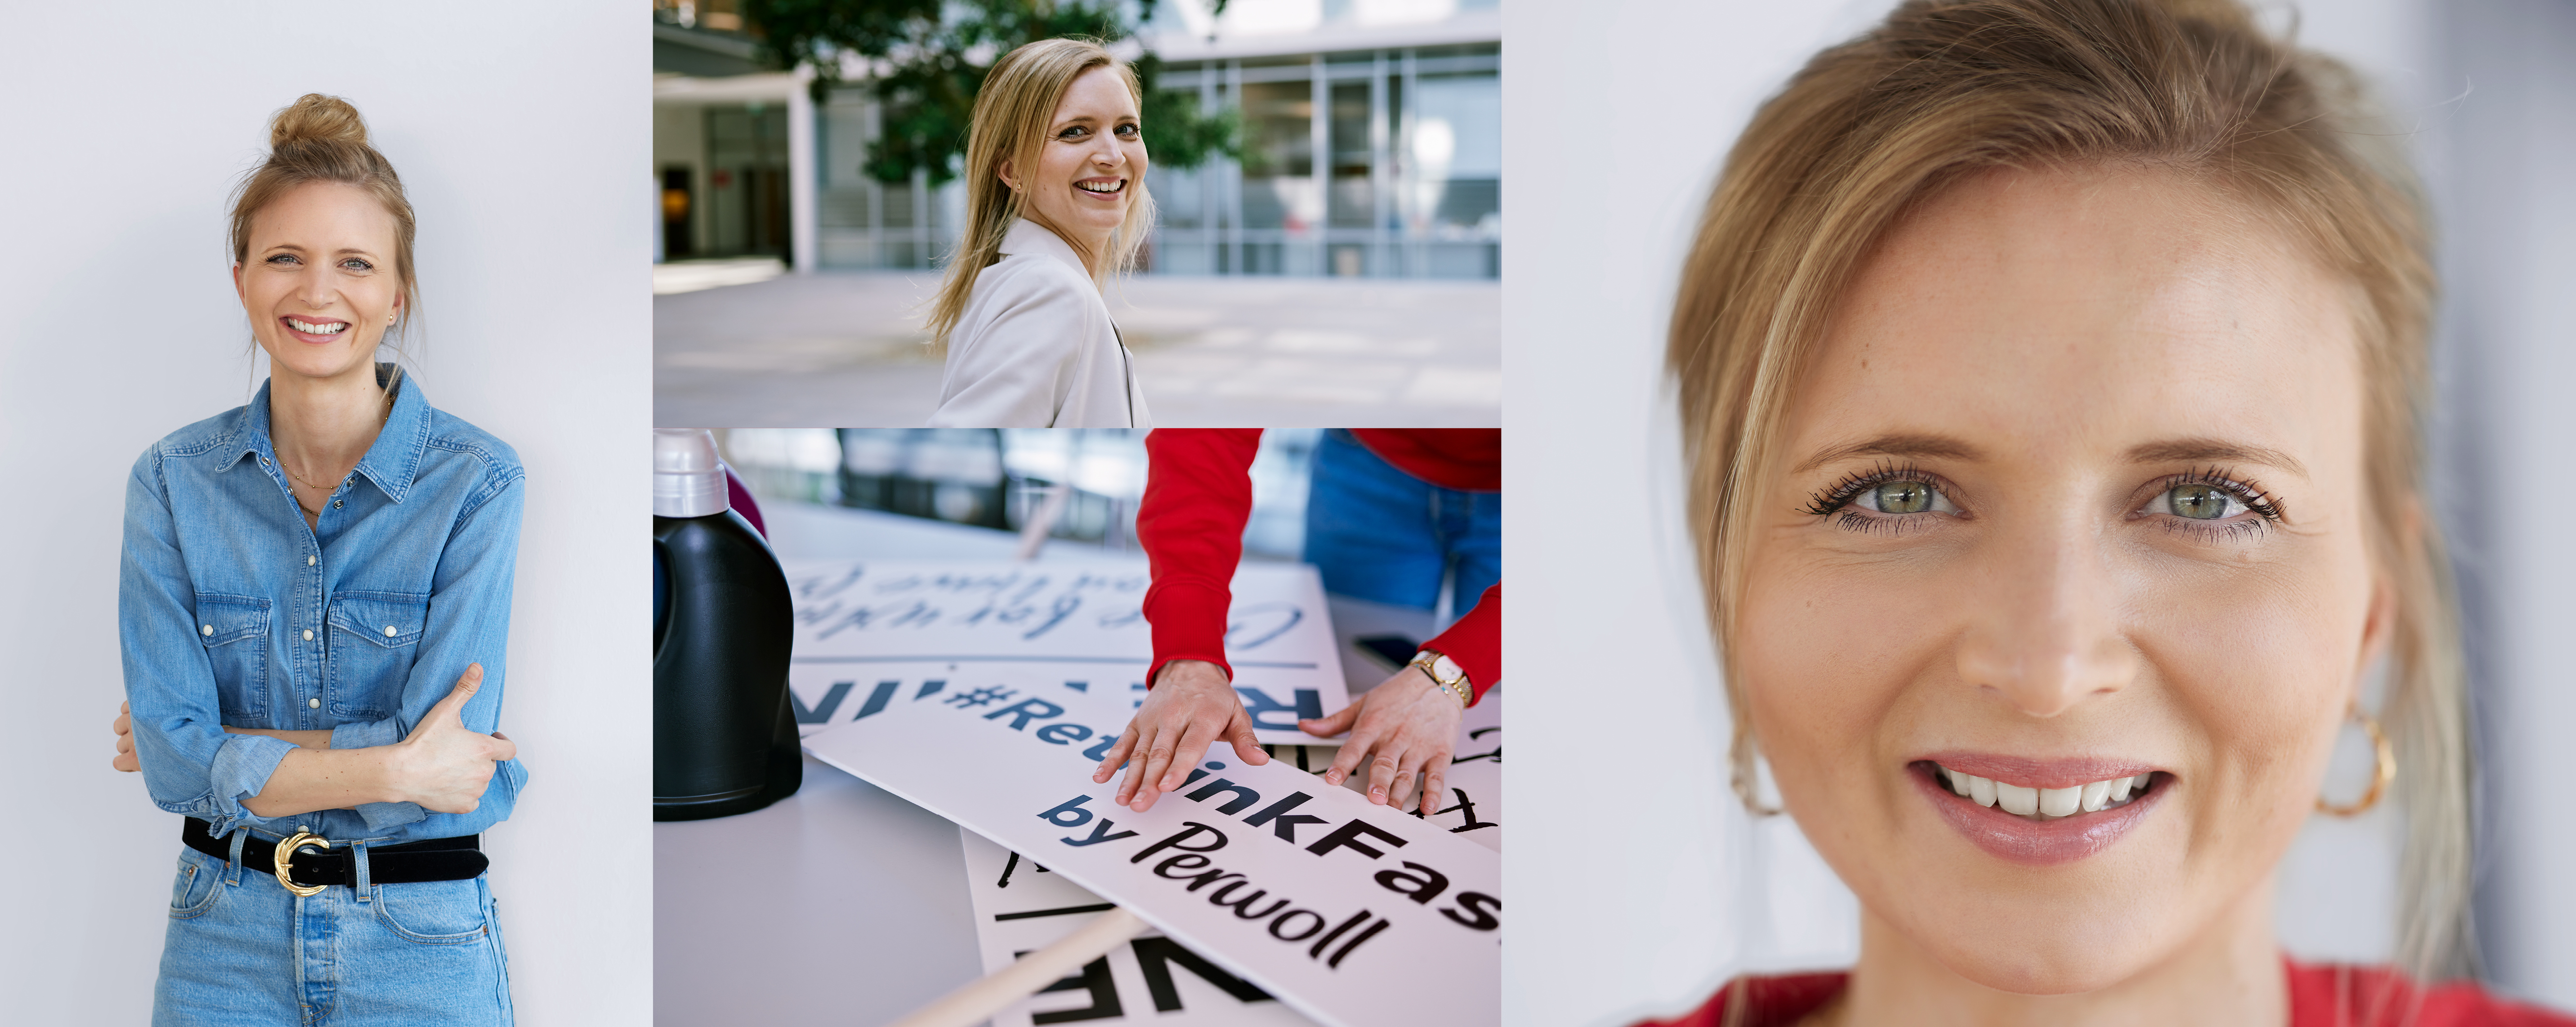 Zaposlena v Henklu pred svojim delovnim mestom. Pozira pred kamero, razvršča znake iz Persilove kampanje #Rethink Fashion in se smehlja. 